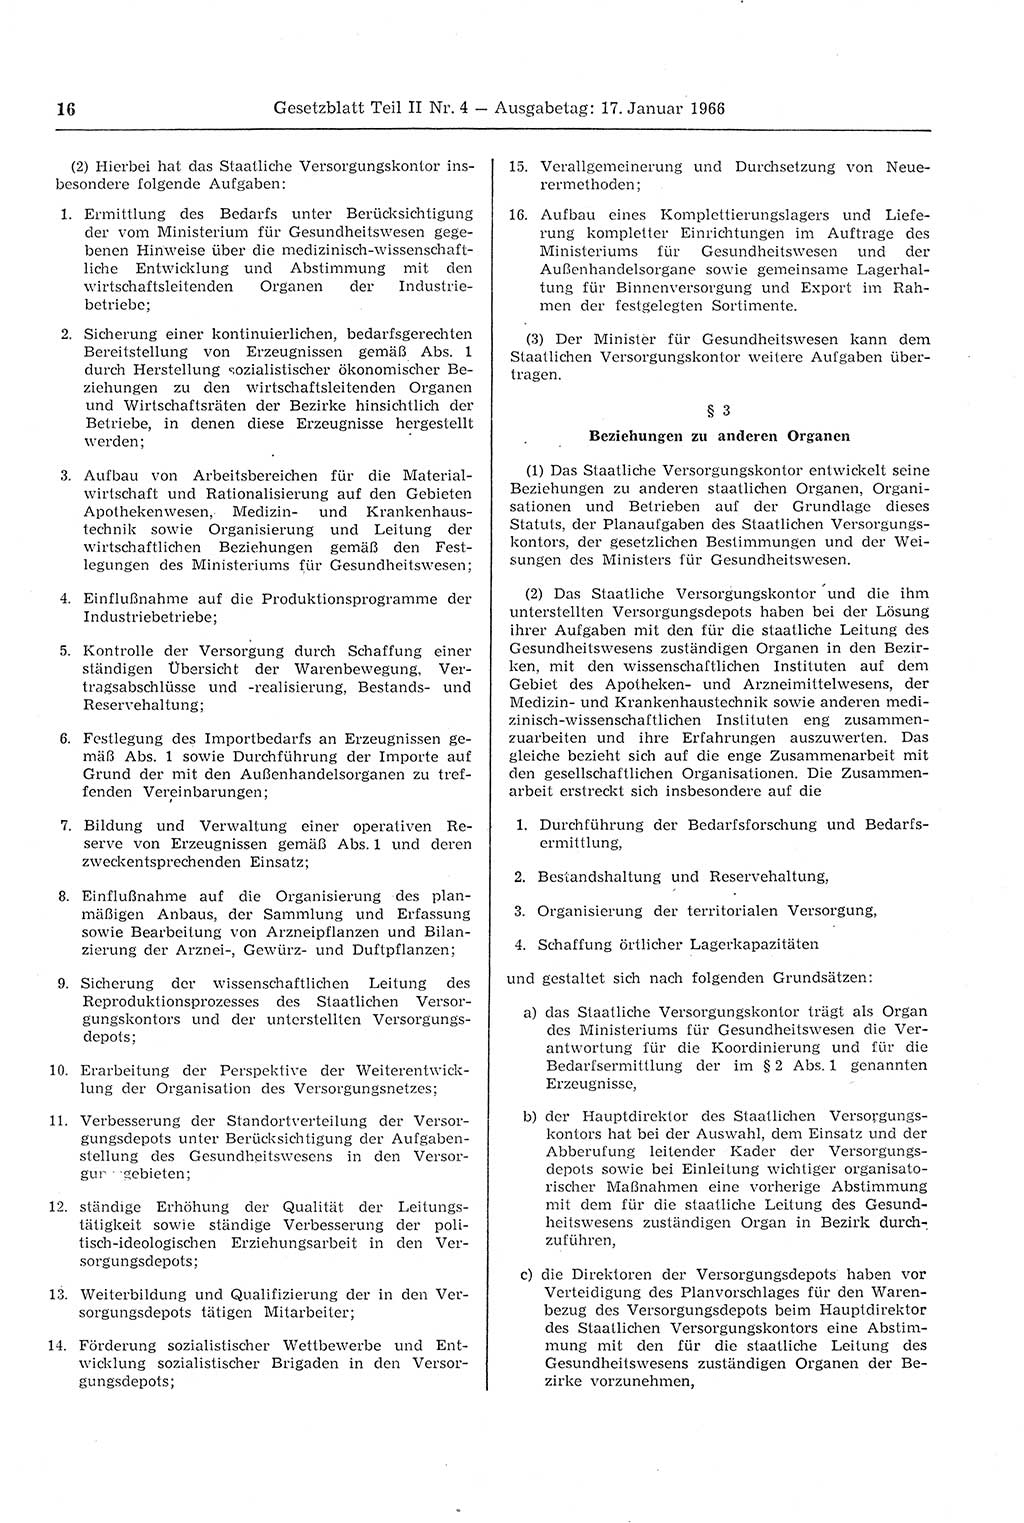 Gesetzblatt (GBl.) der Deutschen Demokratischen Republik (DDR) Teil ⅠⅠ 1966, Seite 16 (GBl. DDR ⅠⅠ 1966, S. 16)